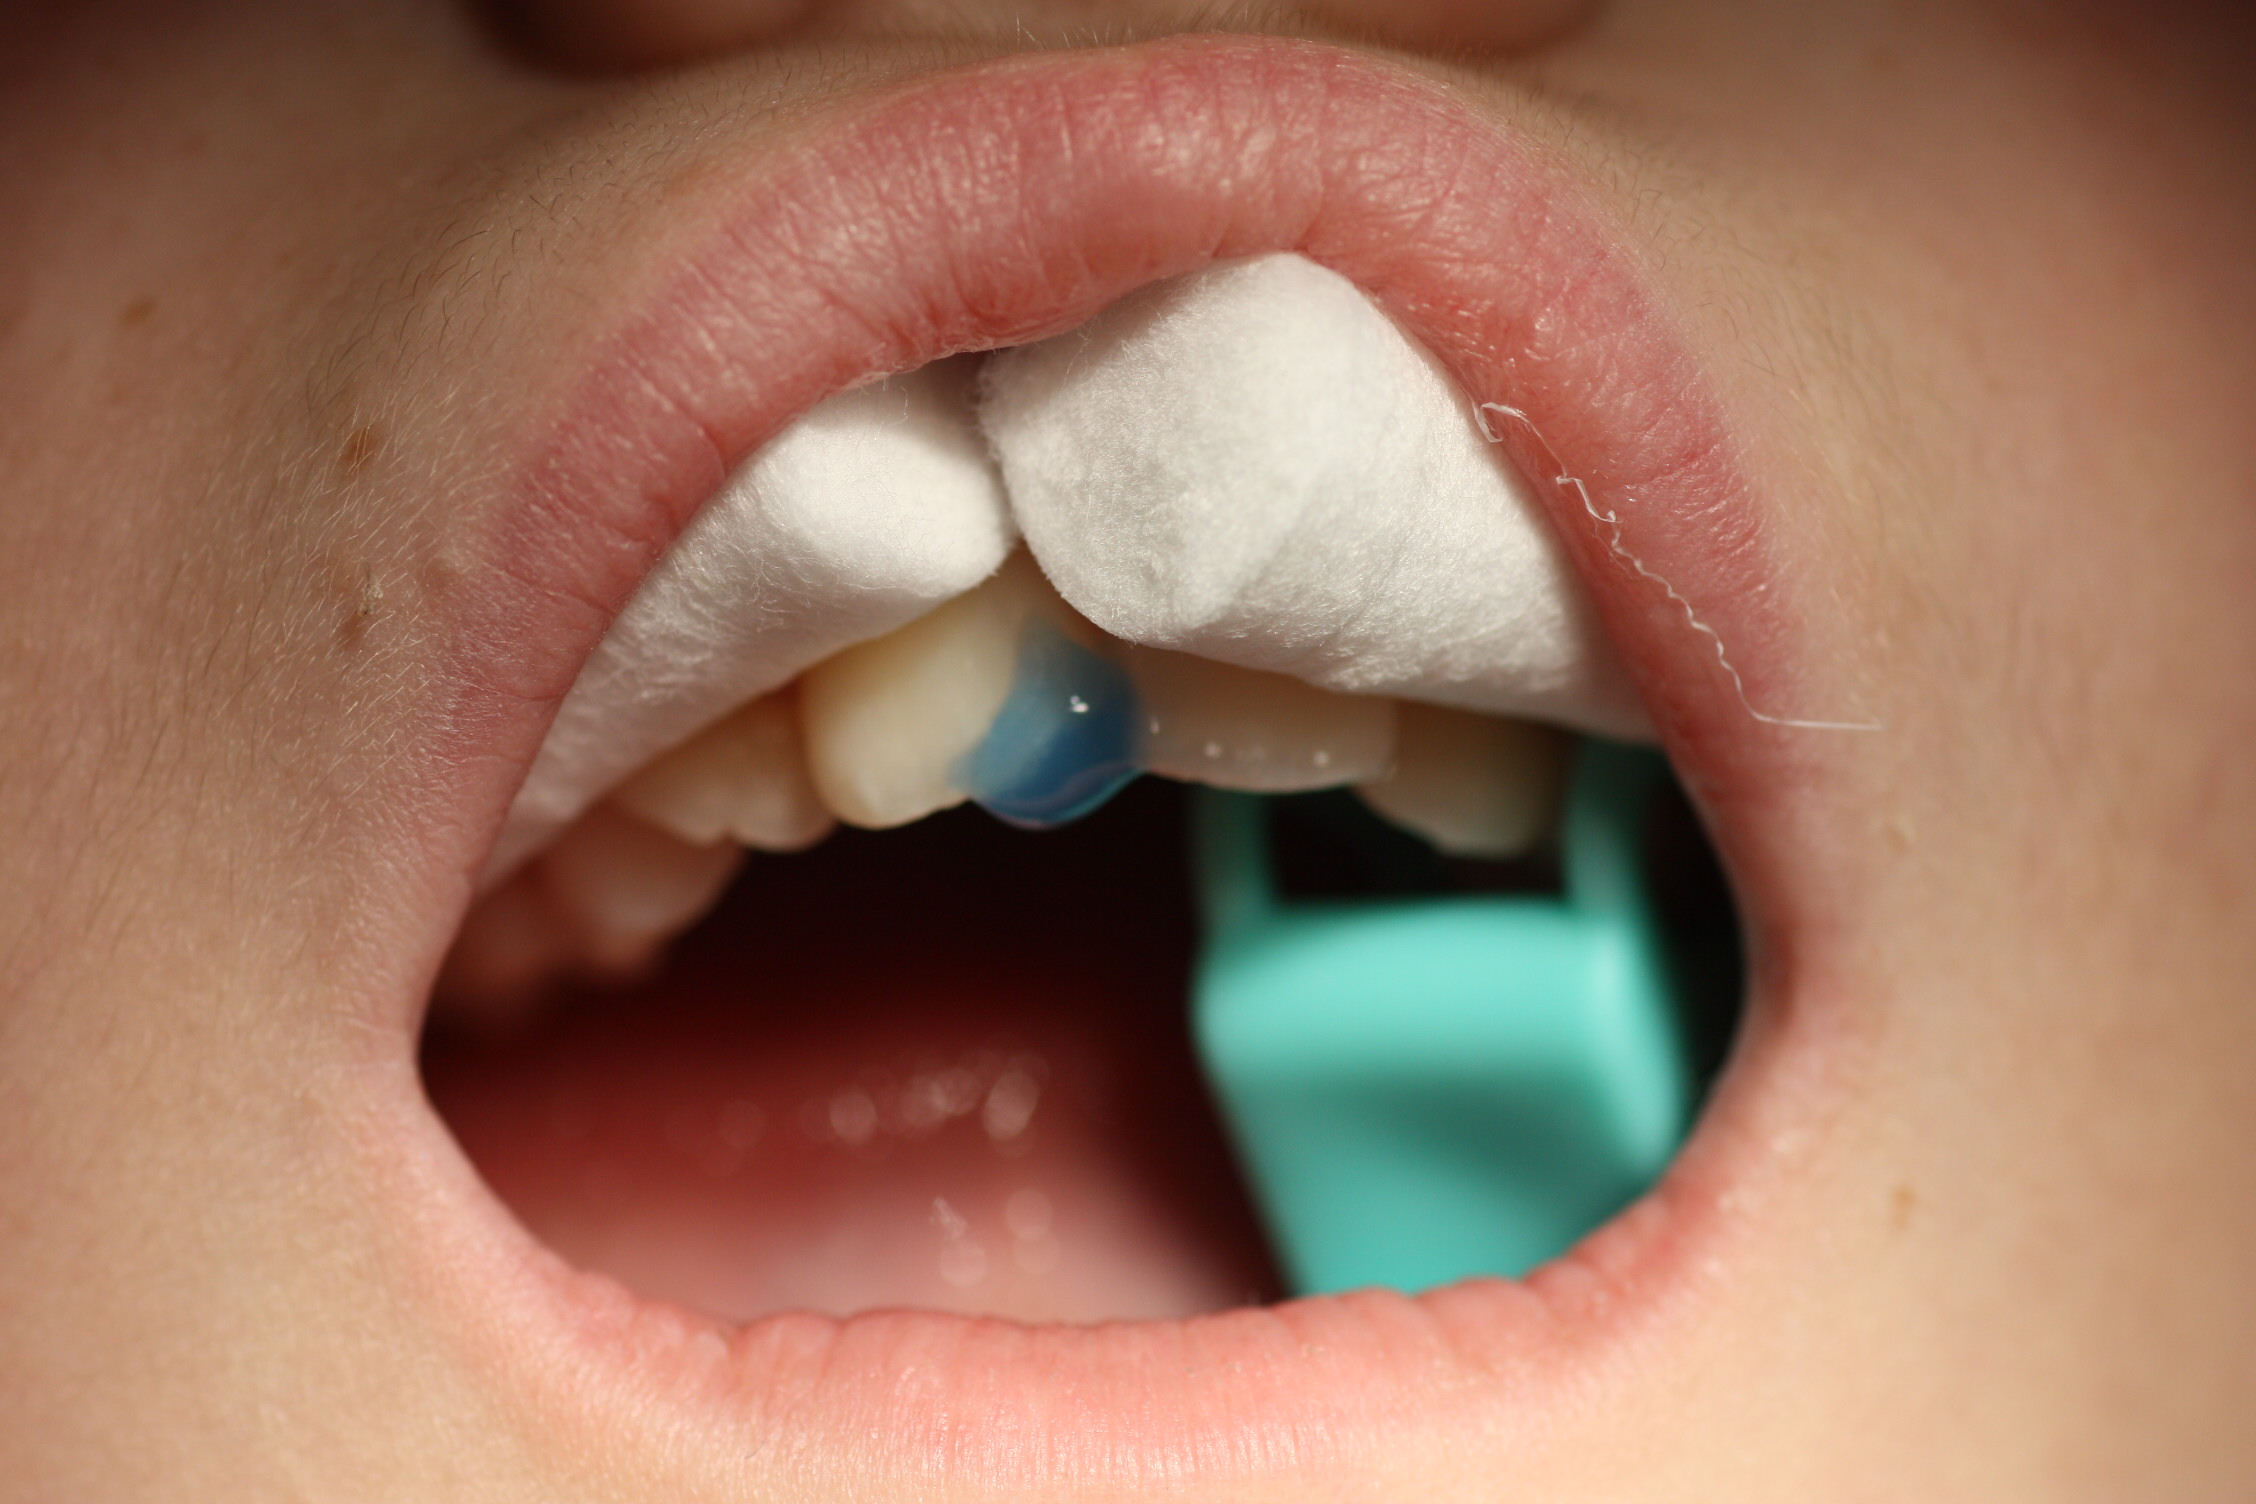 Grabamos la superficie con ácido ortofosfórico al 37% durante 40 segundos, para acondicionar el diente